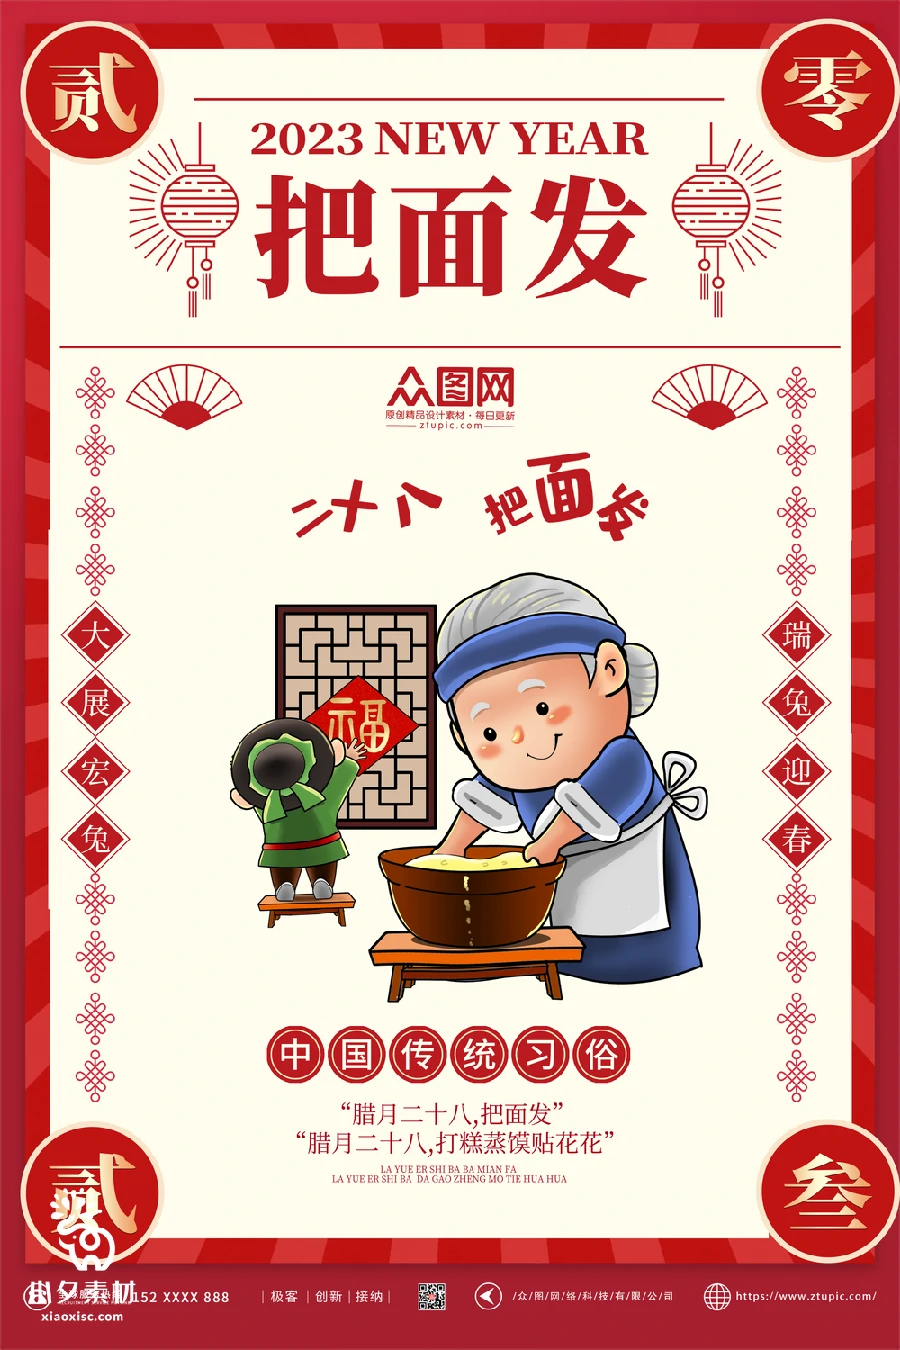 2023兔年新年传统节日年俗过年拜年习俗节气系列海报PSD设计素材【064】